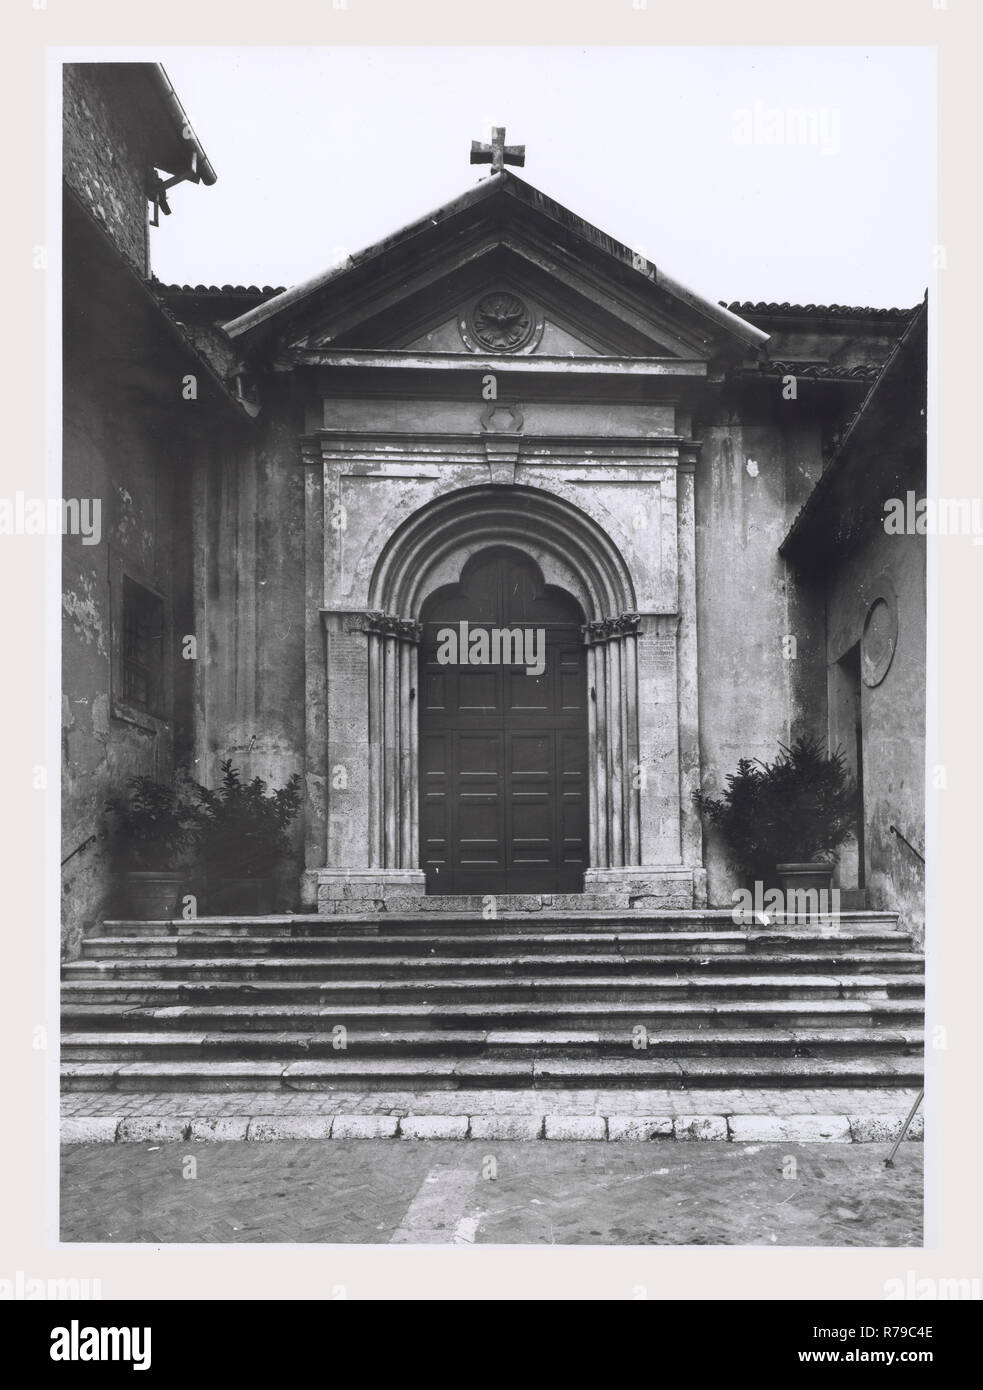 Latium Frosinone Alatri S. Stefano, dies ist mein Italien, die italienische Land der Geschichte, mittelalterliche Architektur. Diese Struktur besitzt eine Fassade in 1284 mit einem Tri-Gelappt Portal gebaut. Stockfoto